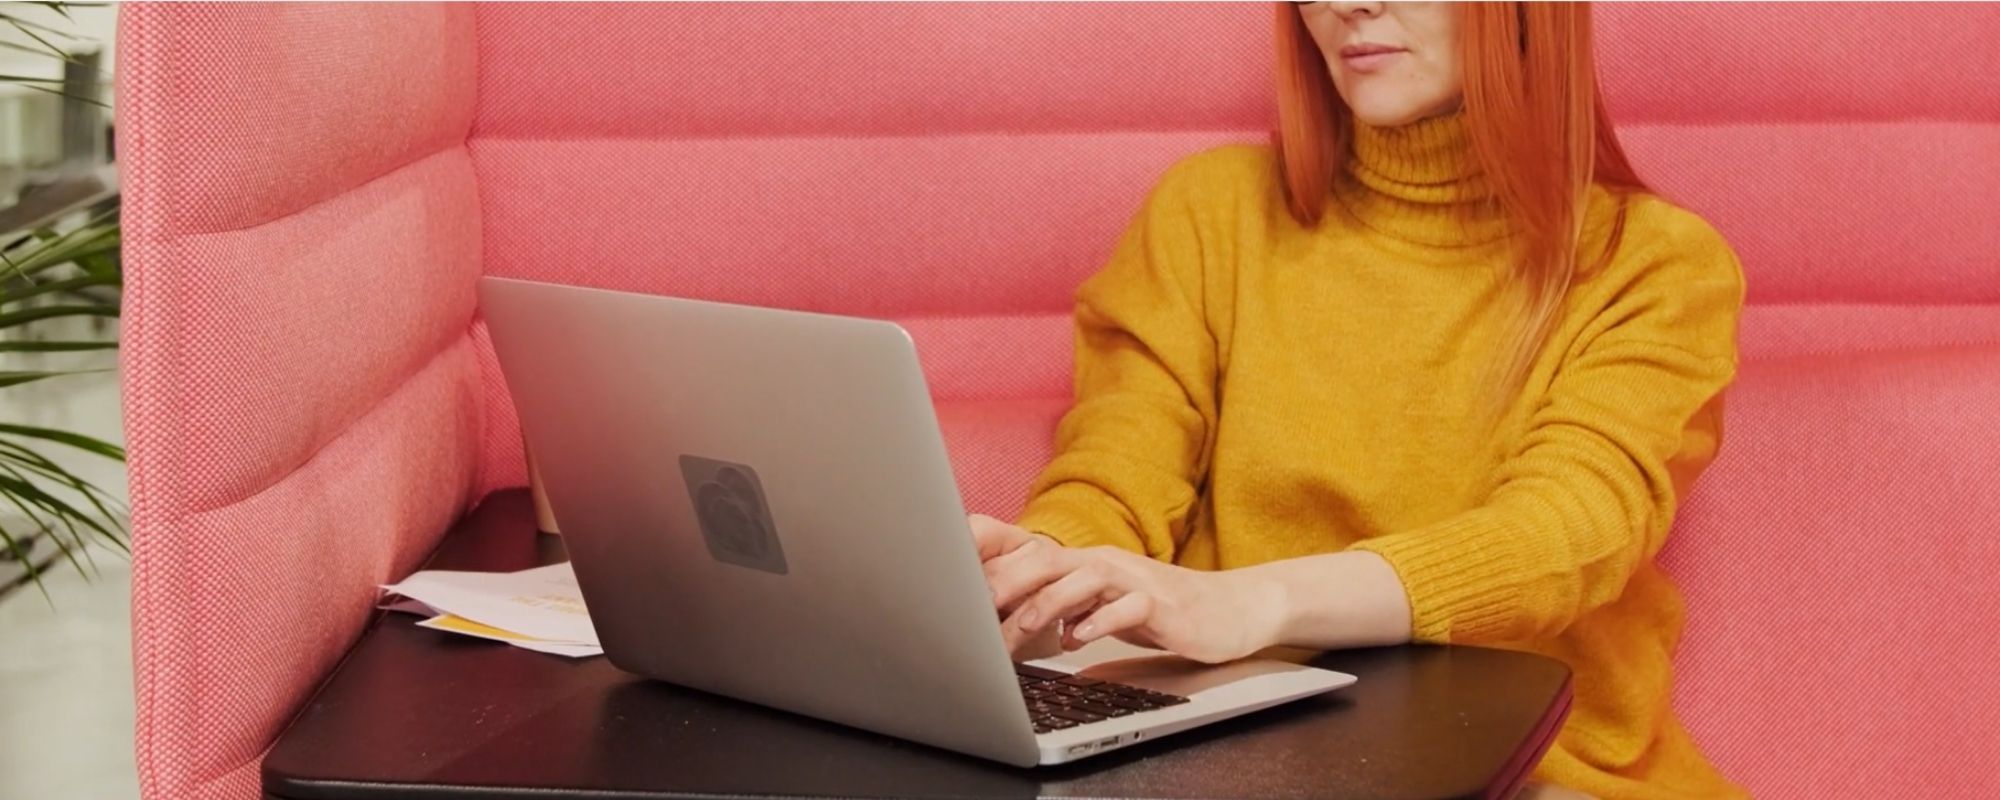 Femme recherche du travail sur son ordinateur